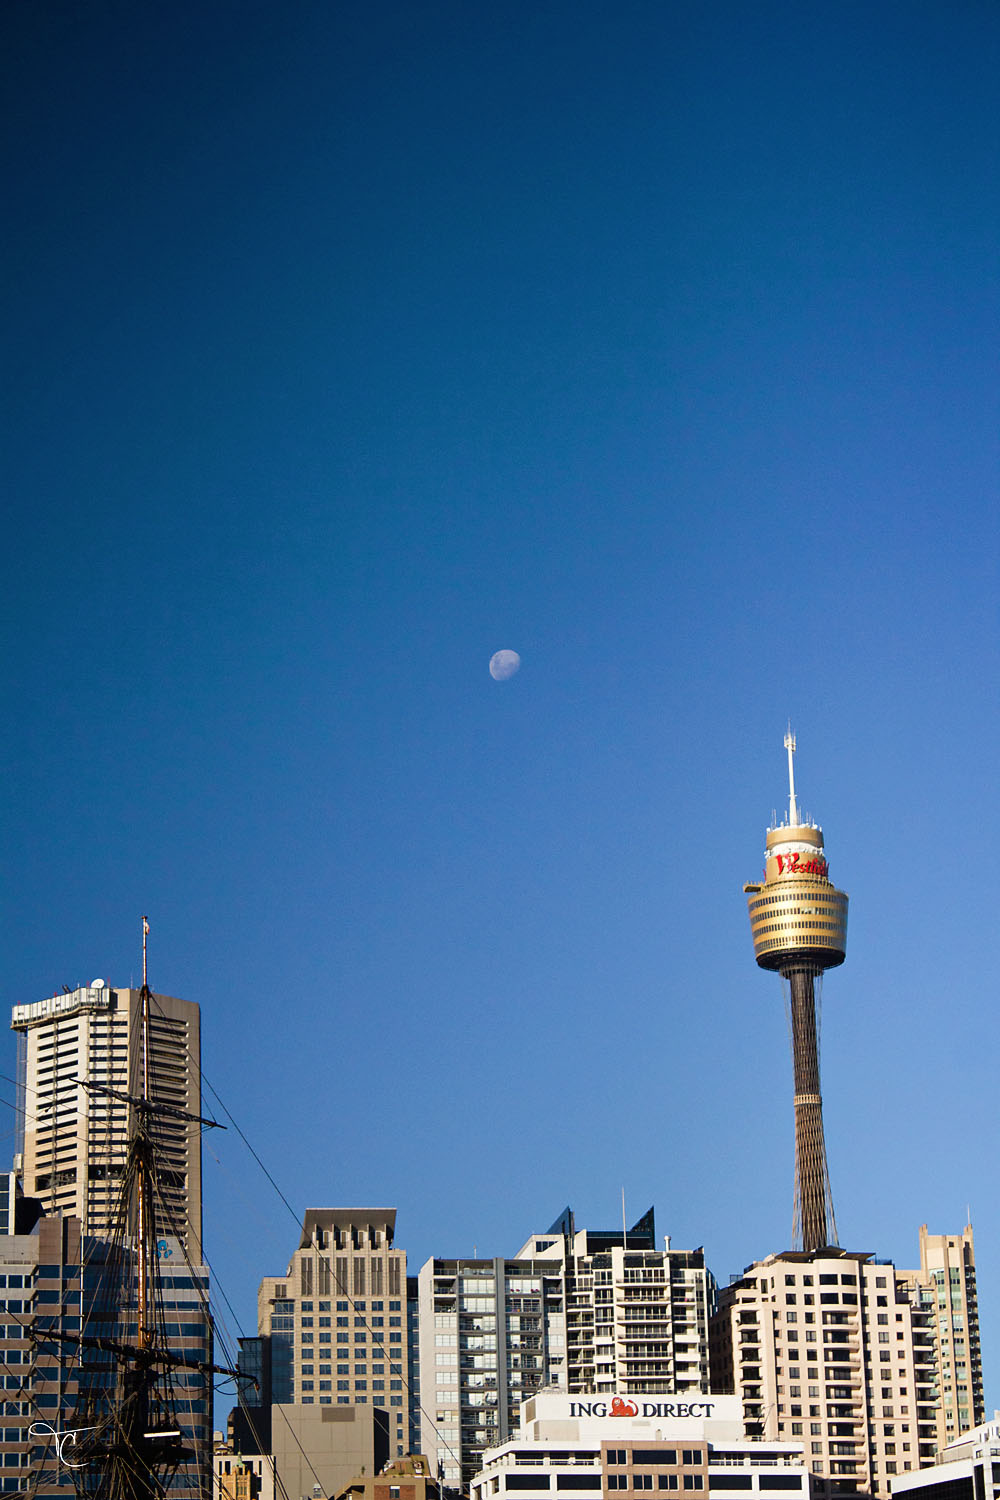 Moon over Sydney skyline